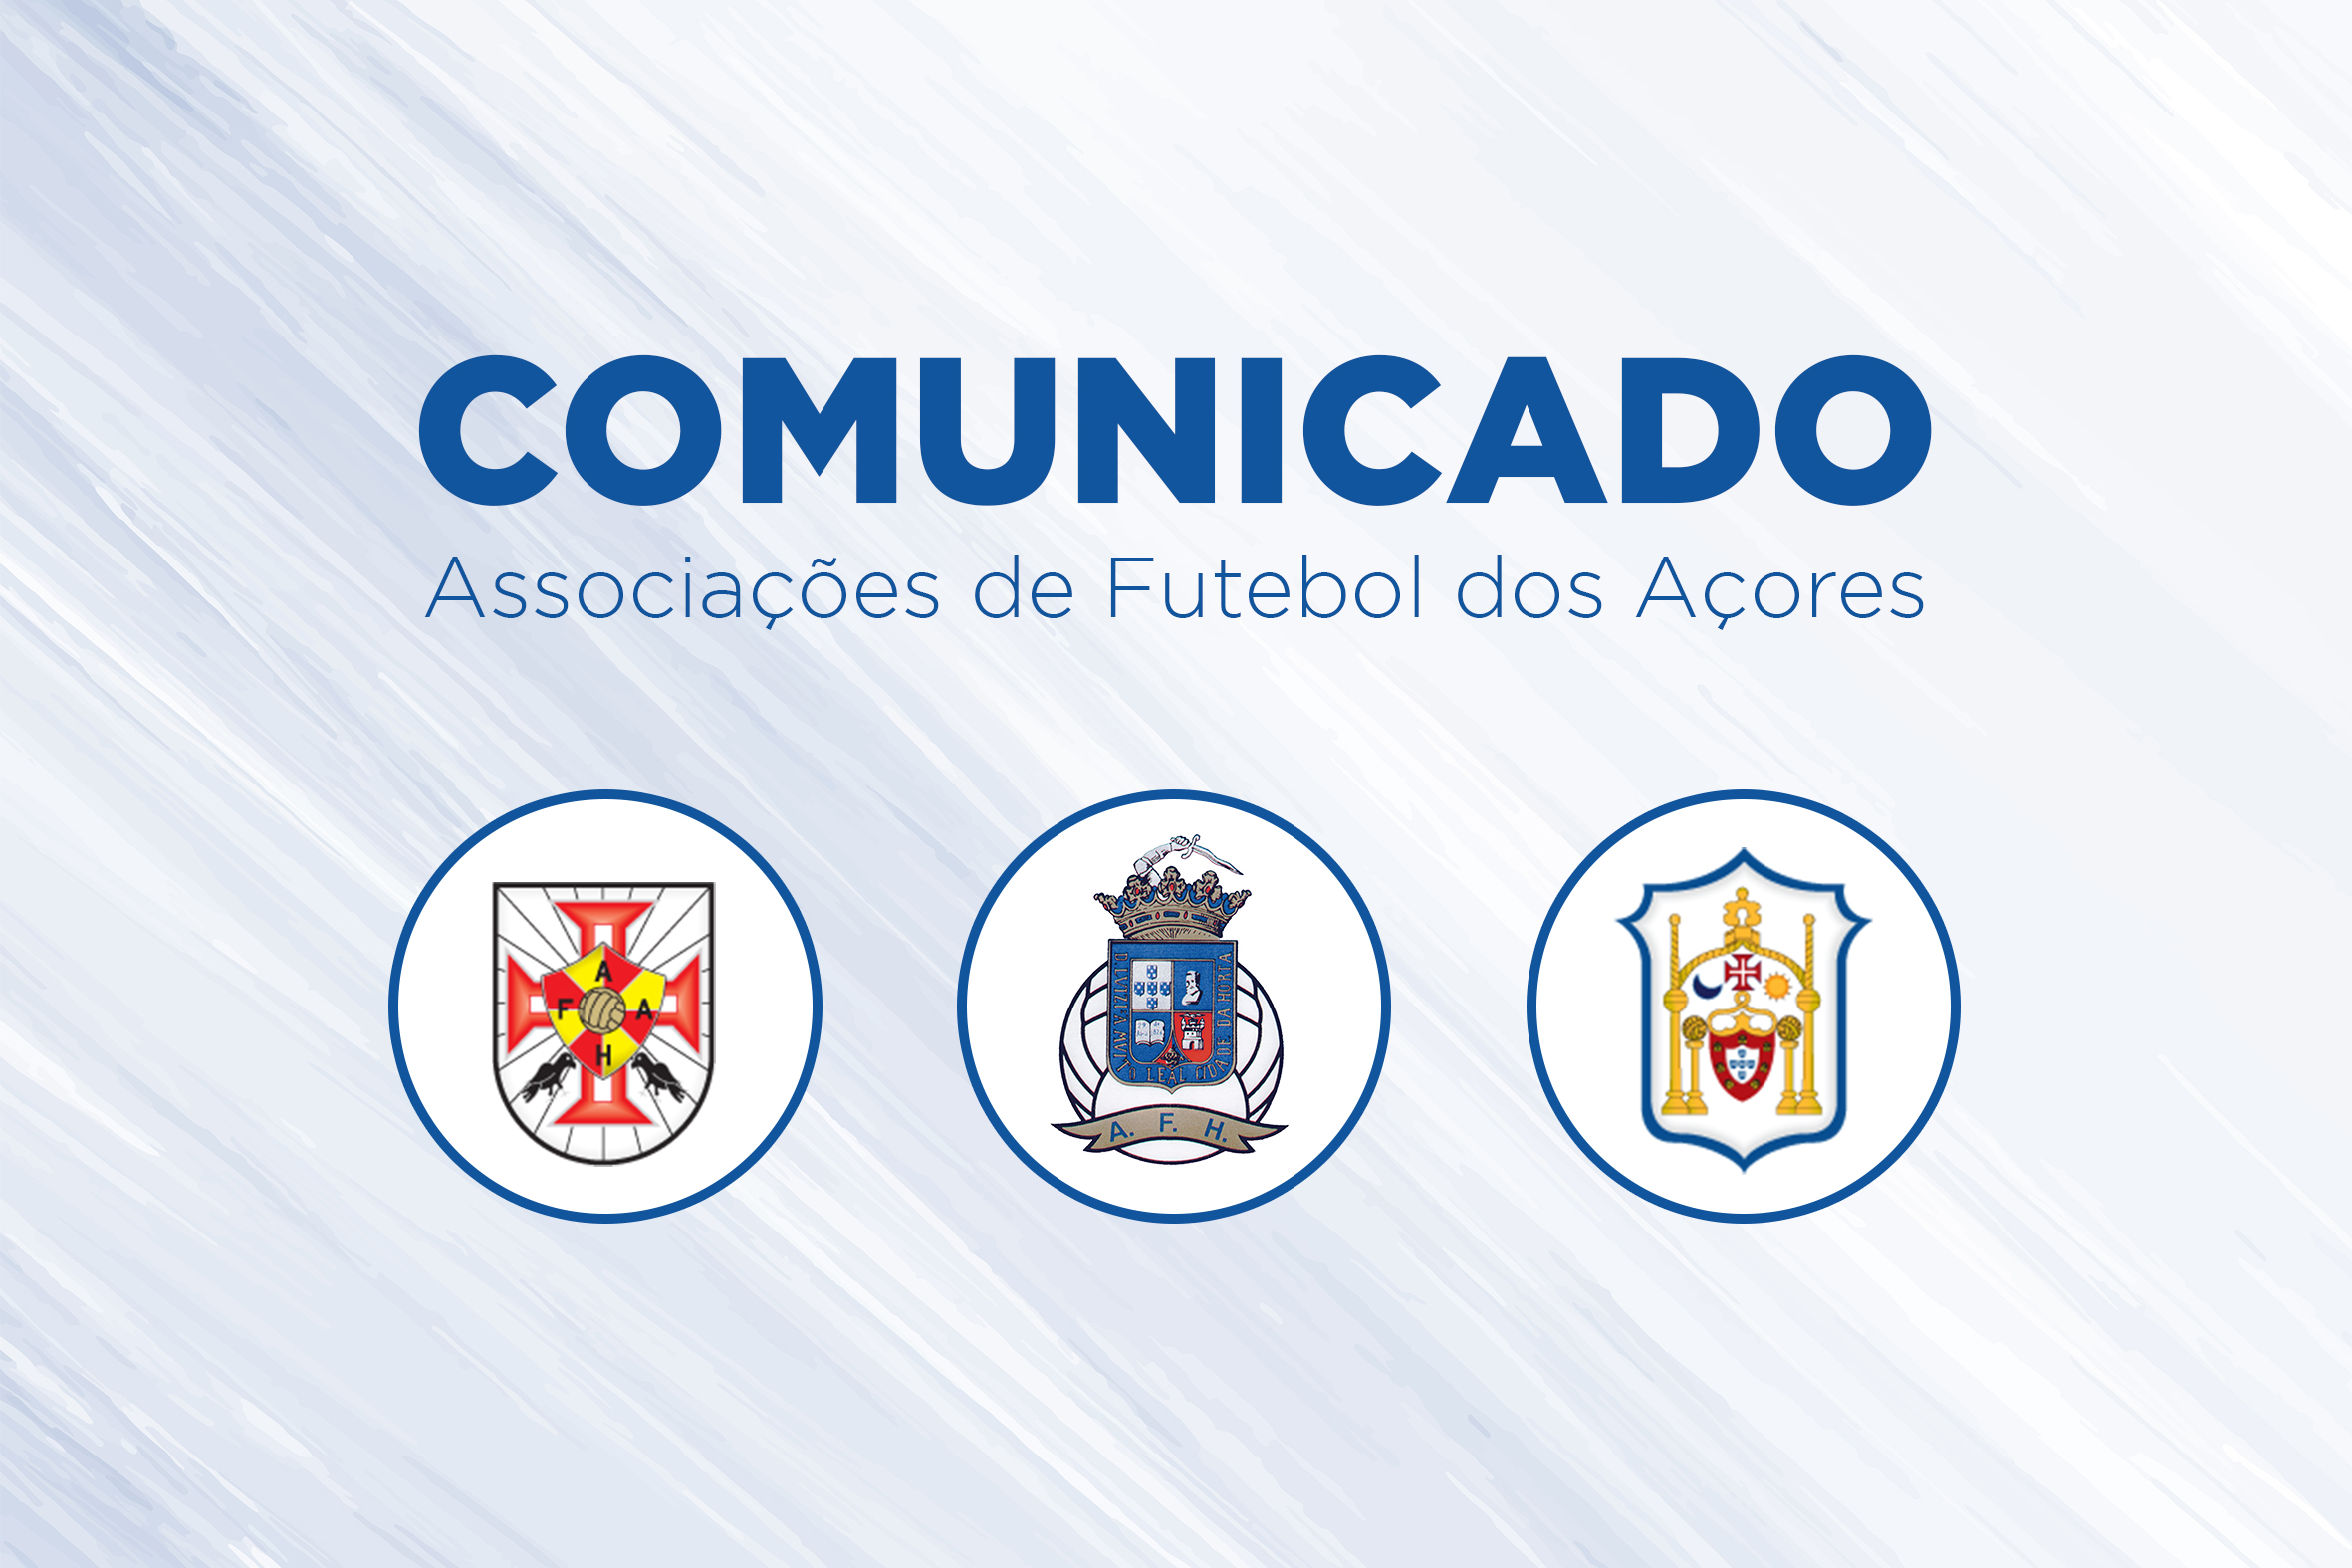 Associações de Futebol dos Açores publicam o Comunicado Oficial sobre Campeonato de Futebol dos Açores